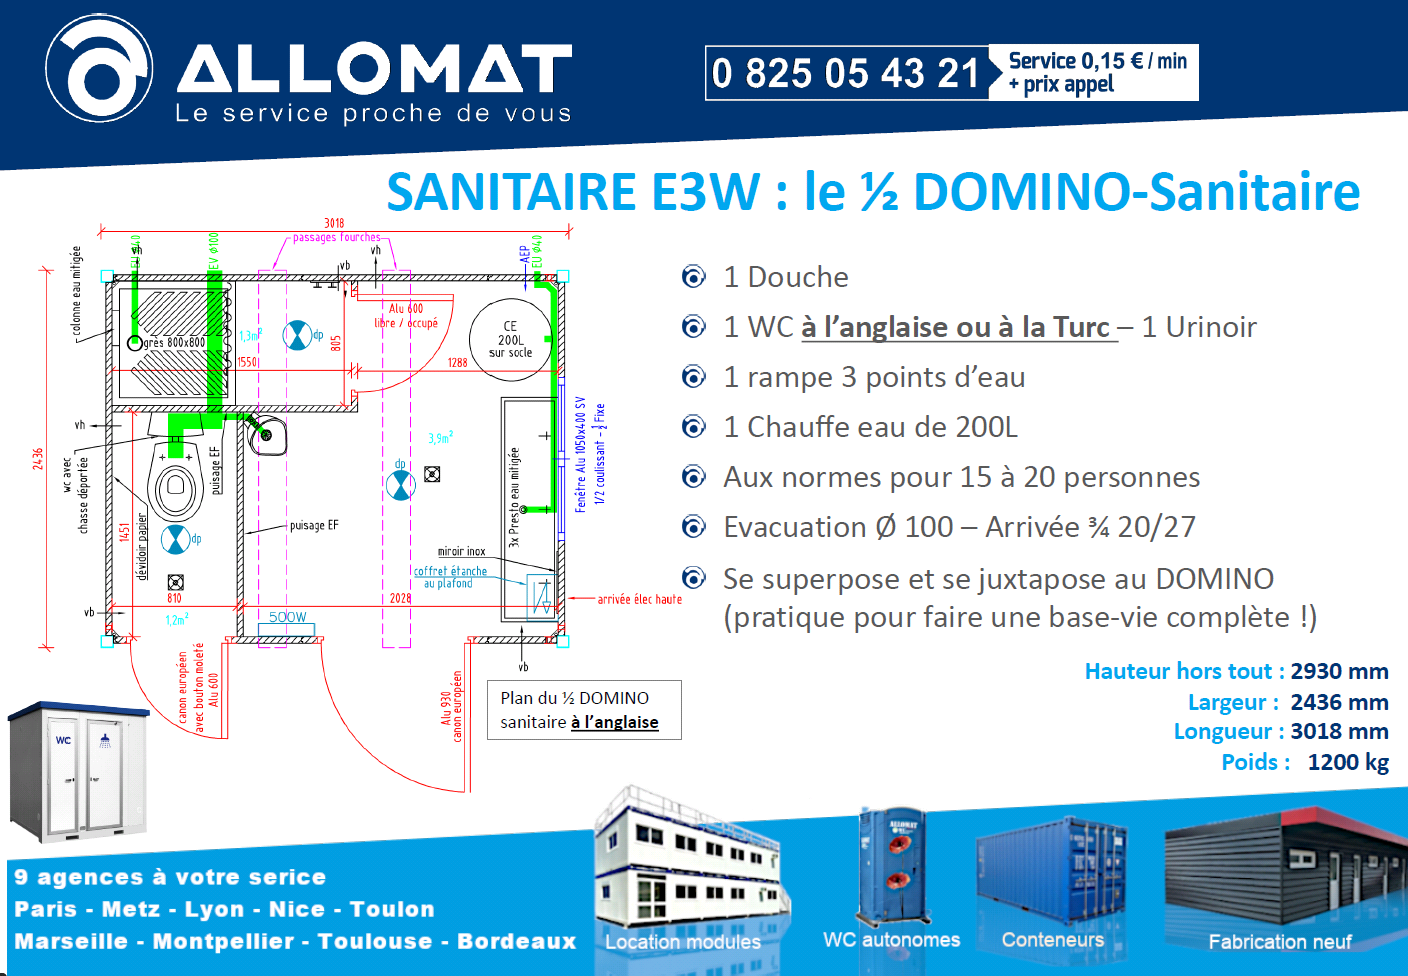 Fiche descriptive du 1/2 DOMINO sanitaire d'ALLOMAT pour les chantier jusqu'à 12 personnes